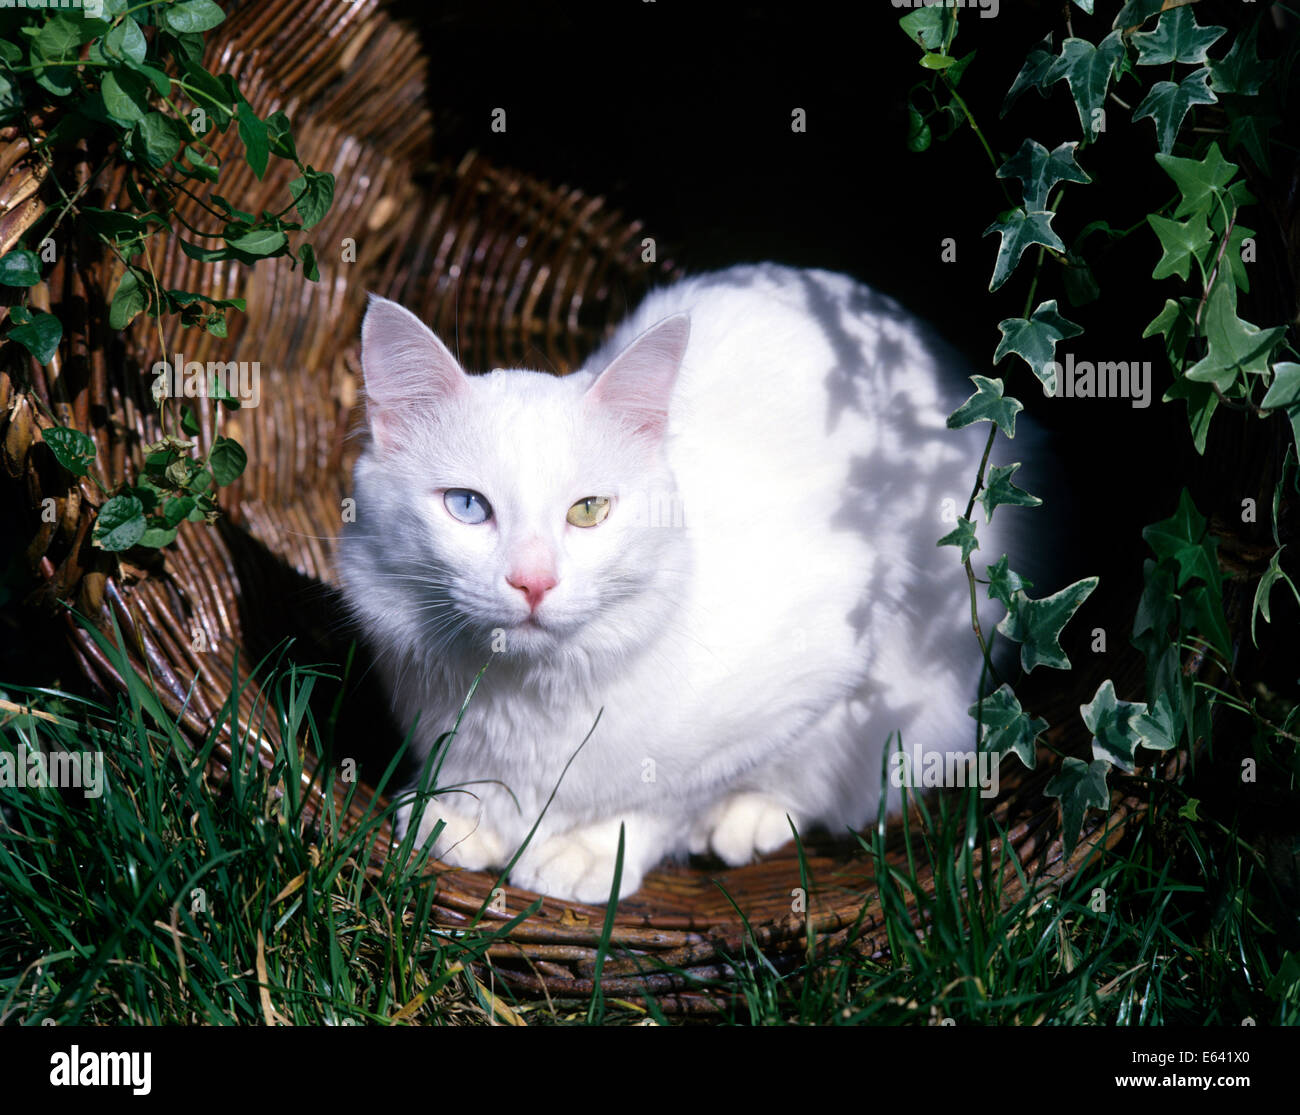 Türkisch Van. Weiße Katze mit Augen verschiedener Farbe in einem Weidenkorb in einem Garten. Deutschland Stockfoto